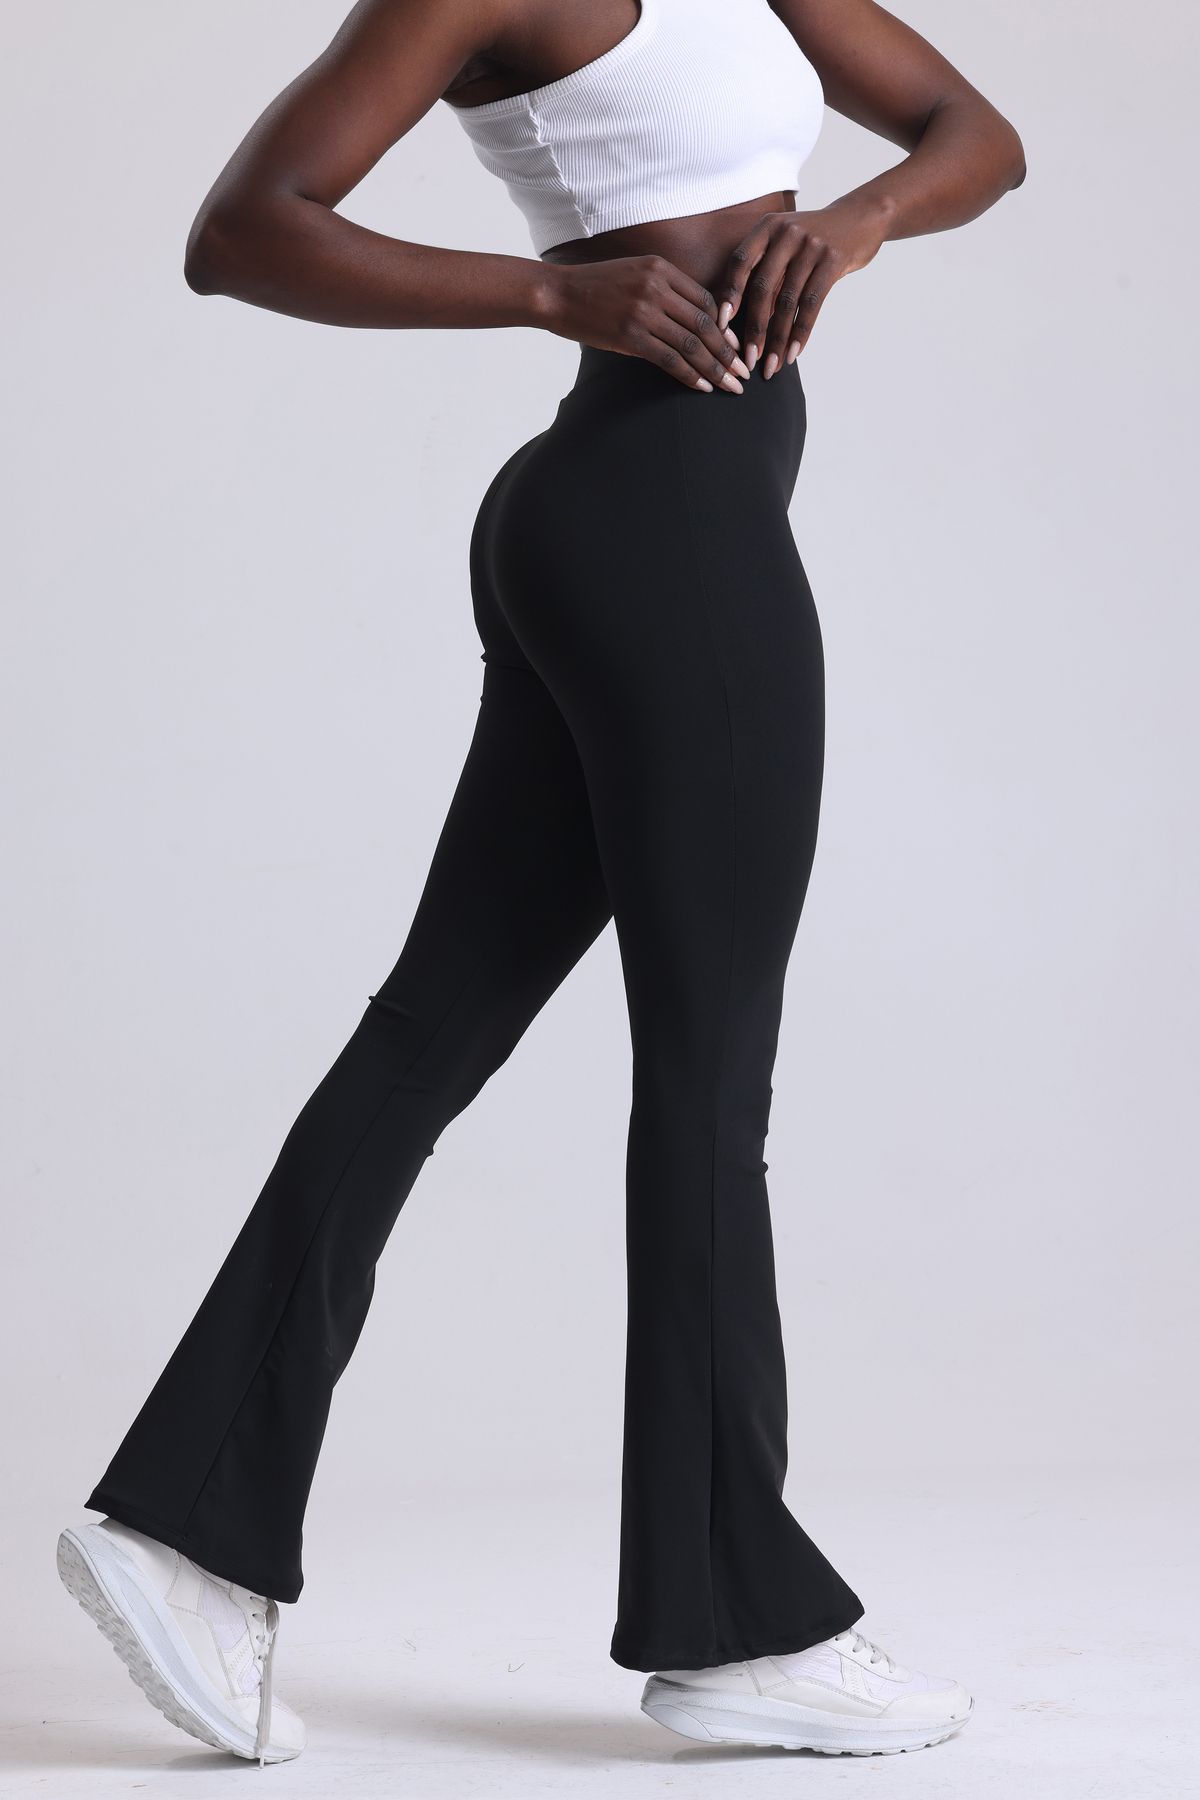 VOSSAX Kadın Siyah Ispanyol Paça Dalgıç Kumaş Yüksek Bel Likralı Toparlayıcı Tayt Pantolon